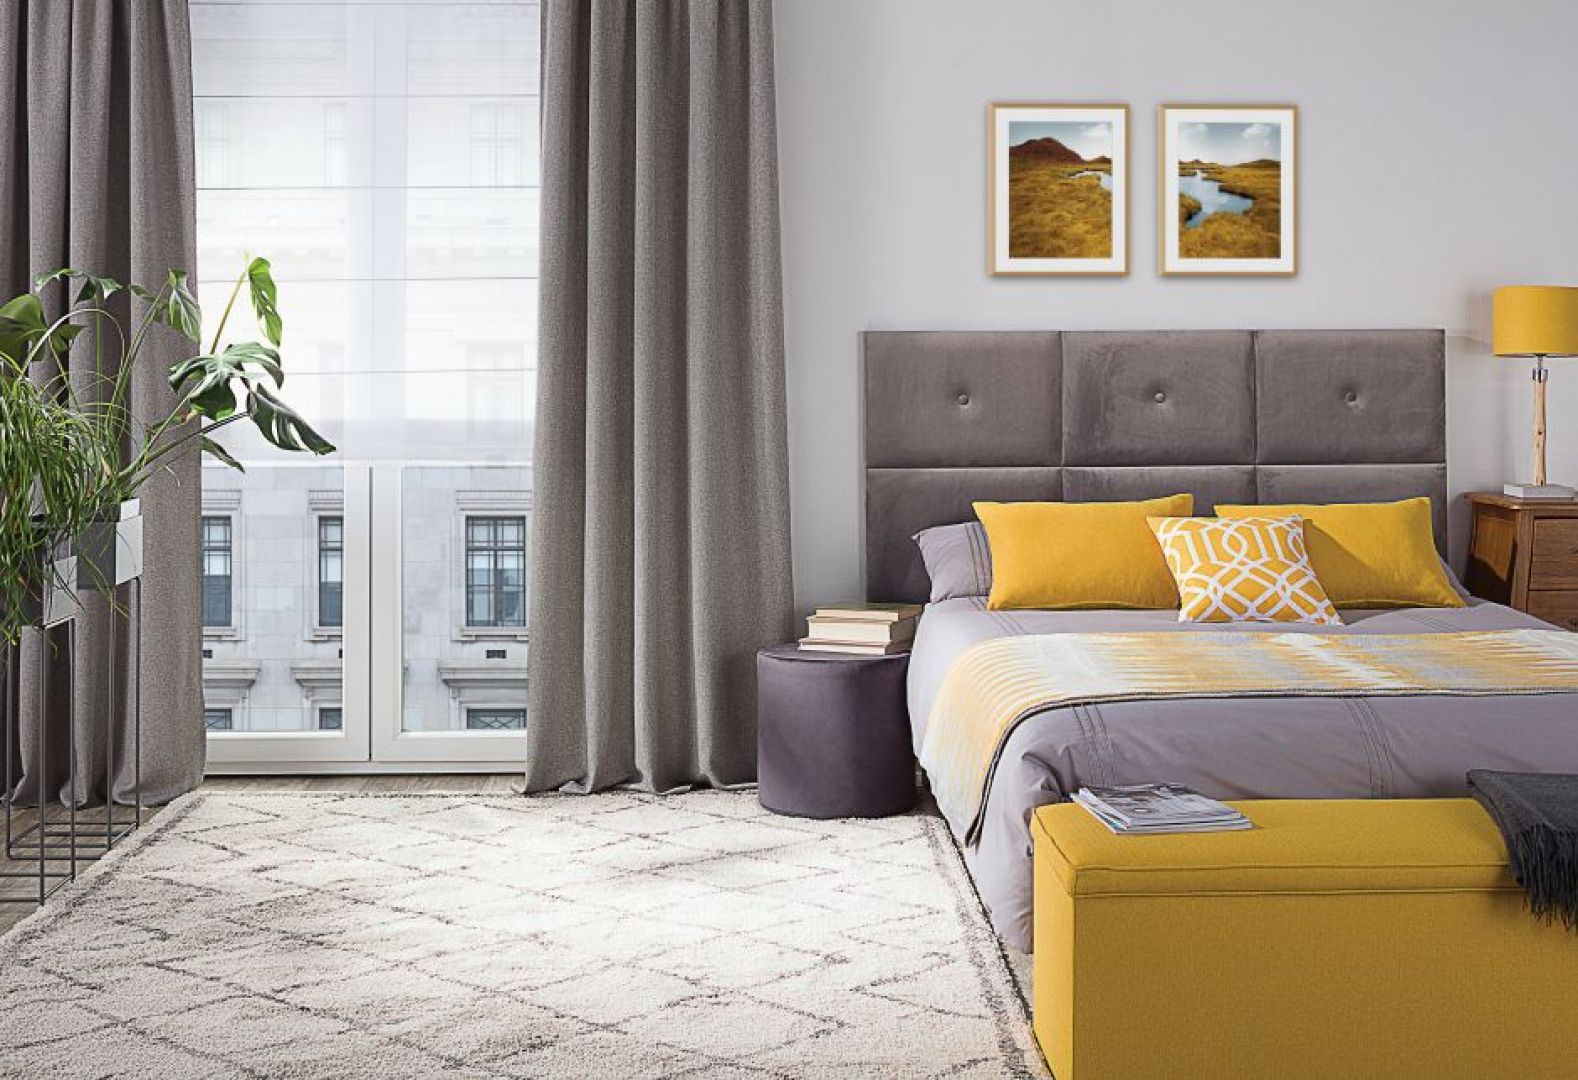 Bardziej wyraziste kolory do sypialni najlepiej jest wprowadzić w postaci dodatków dekoracyjnych. Fot. Dekoria.pl